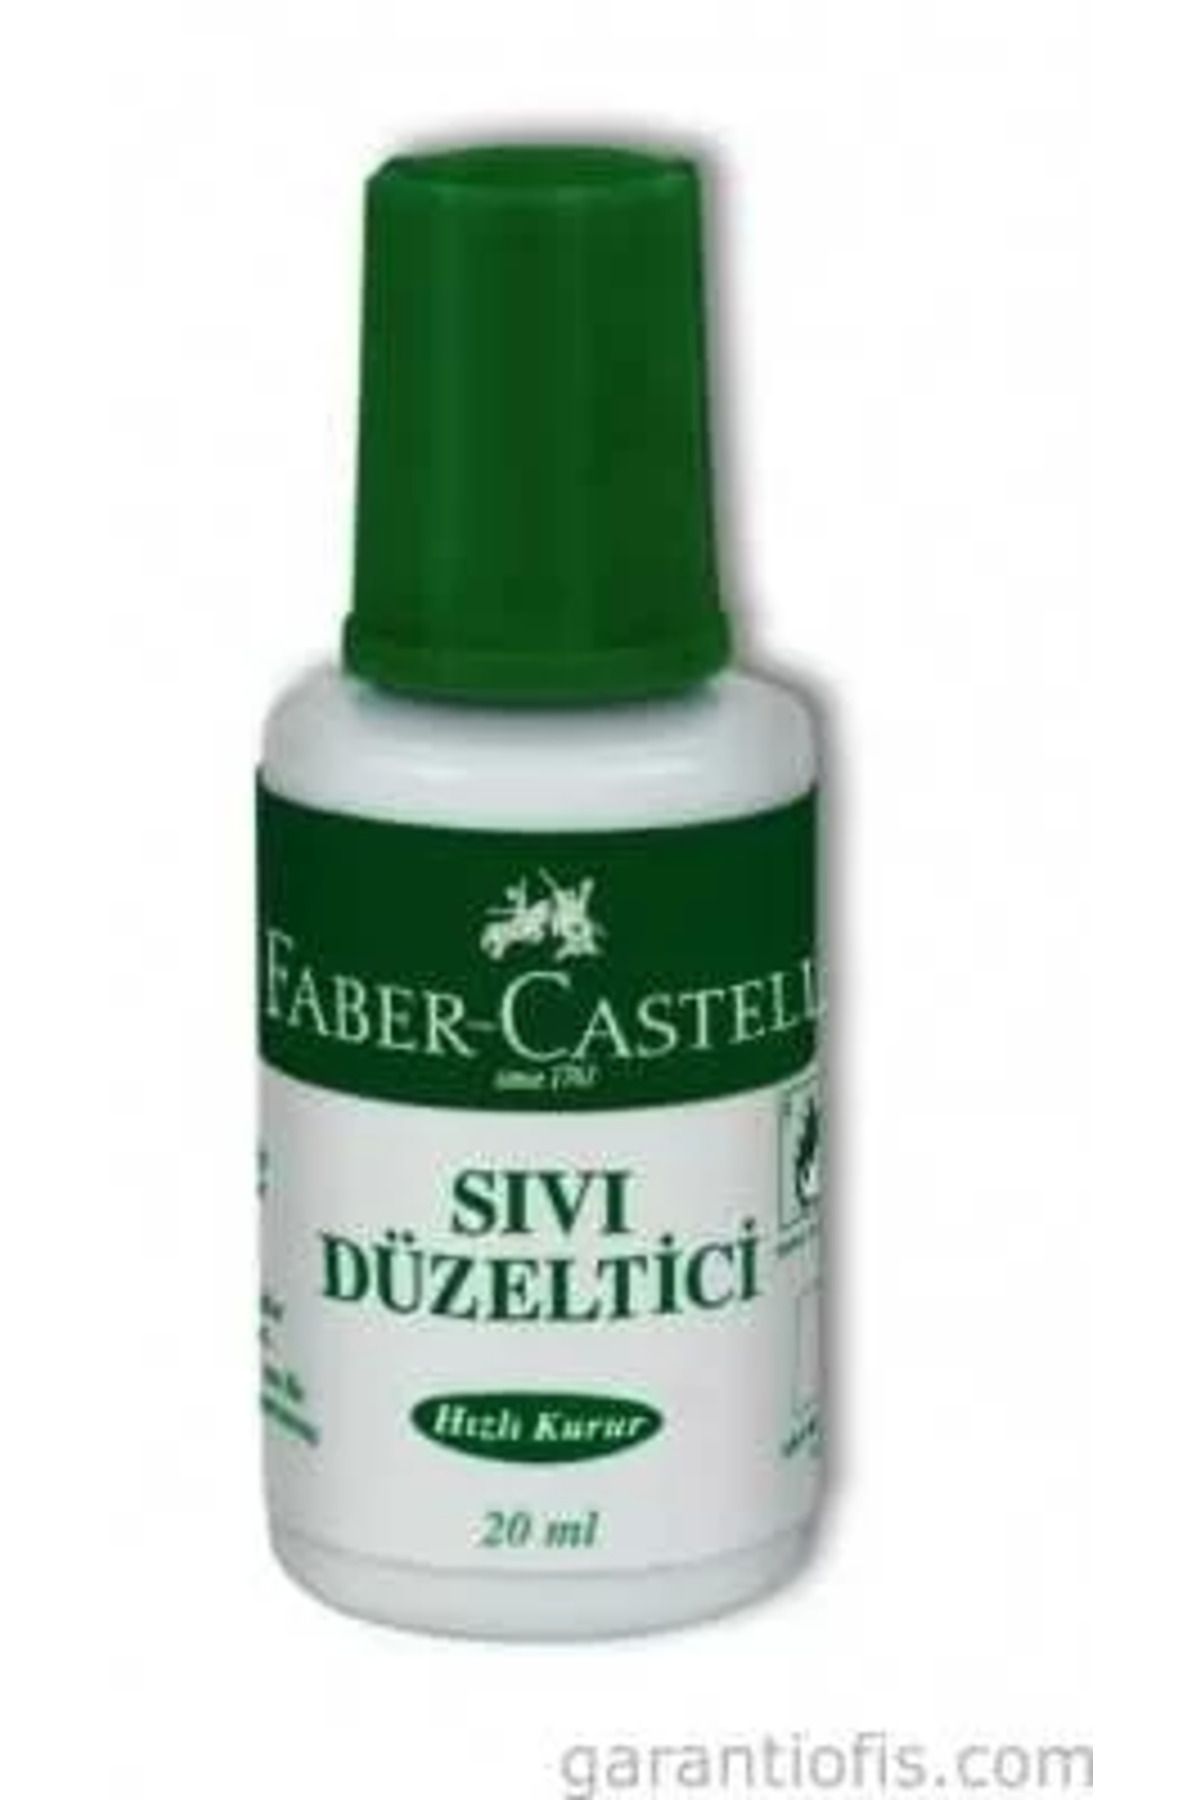 Faber Castell Sıvı Düzeltici (20ml)